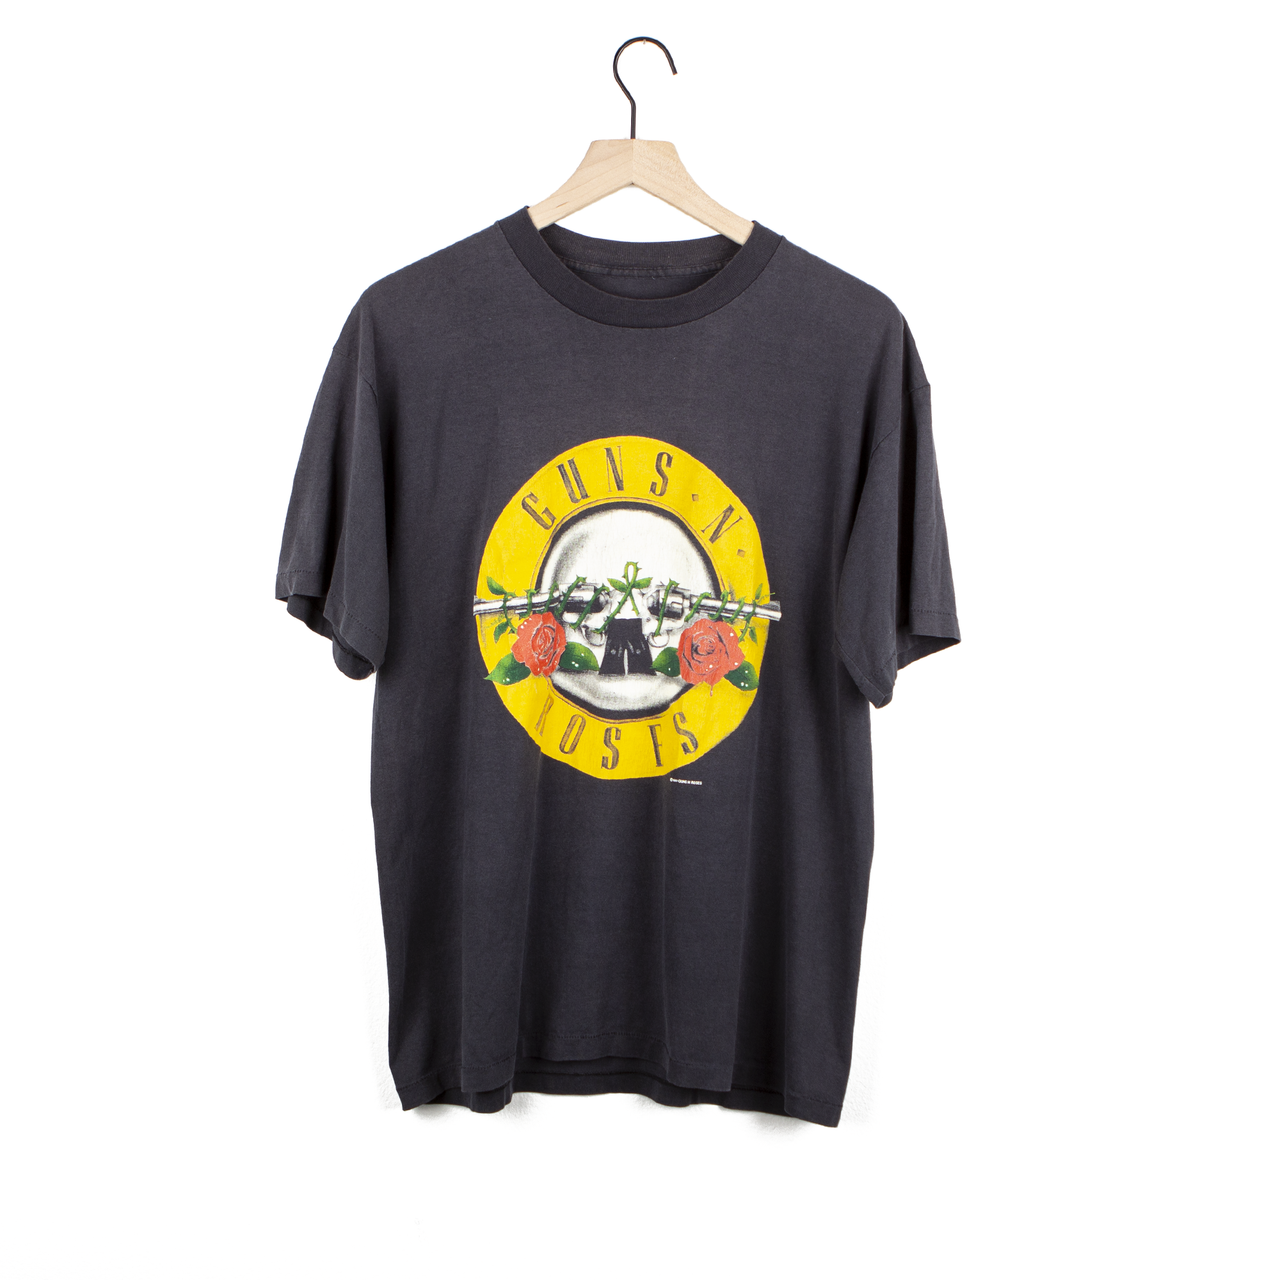 '87 Guns N' Roses "Appetite For Destruction" Era Shirt